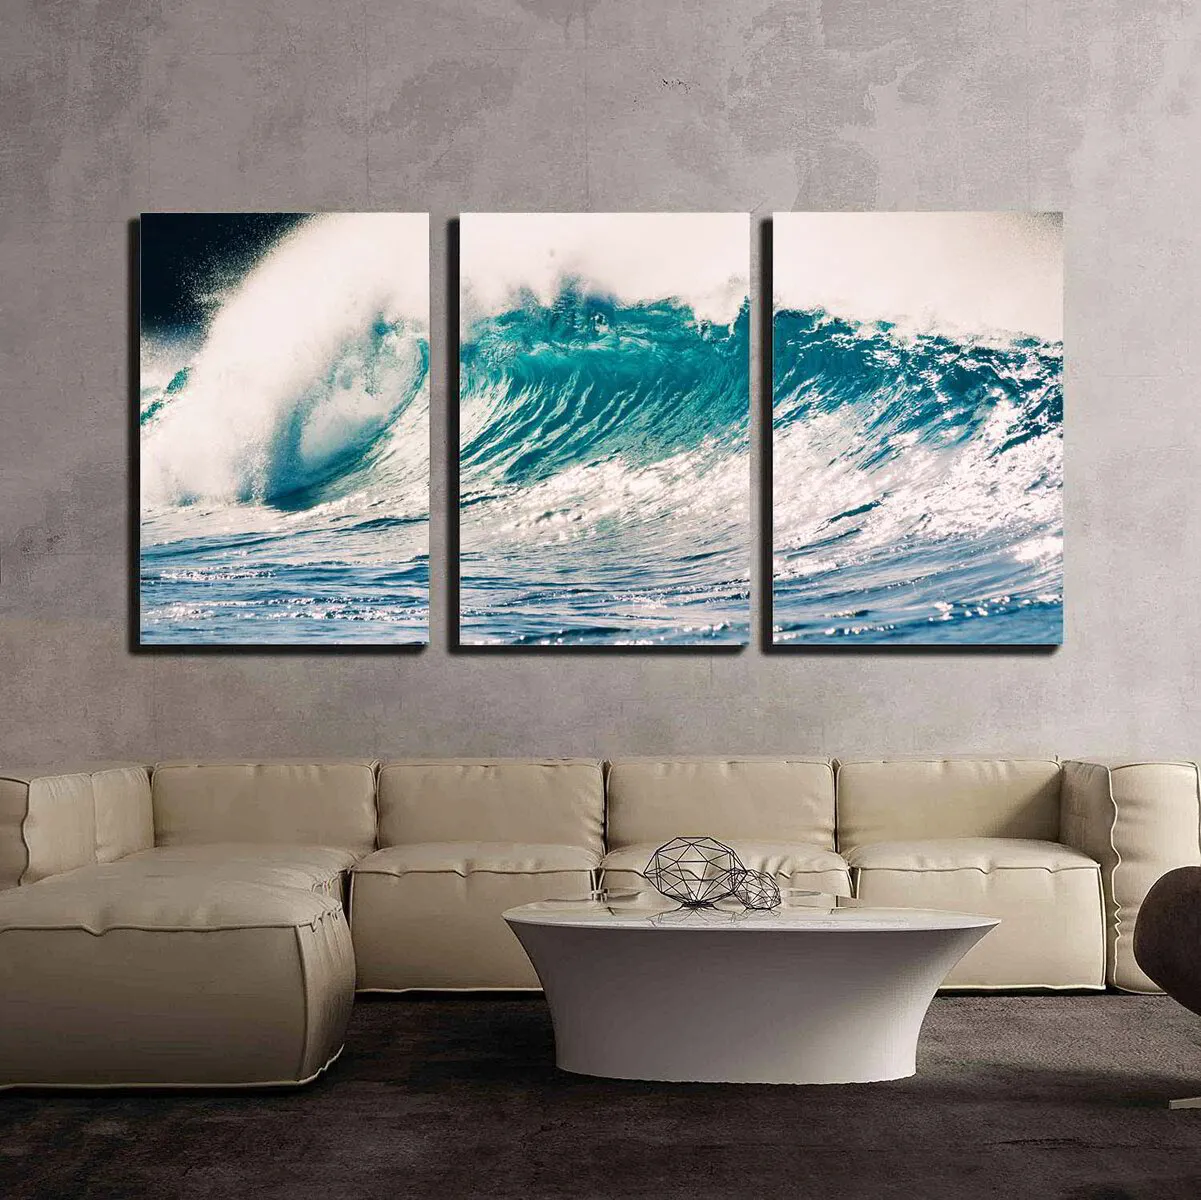 S3 Printed Acoustic Panels - Ocean Wave on Black - 3 Panels